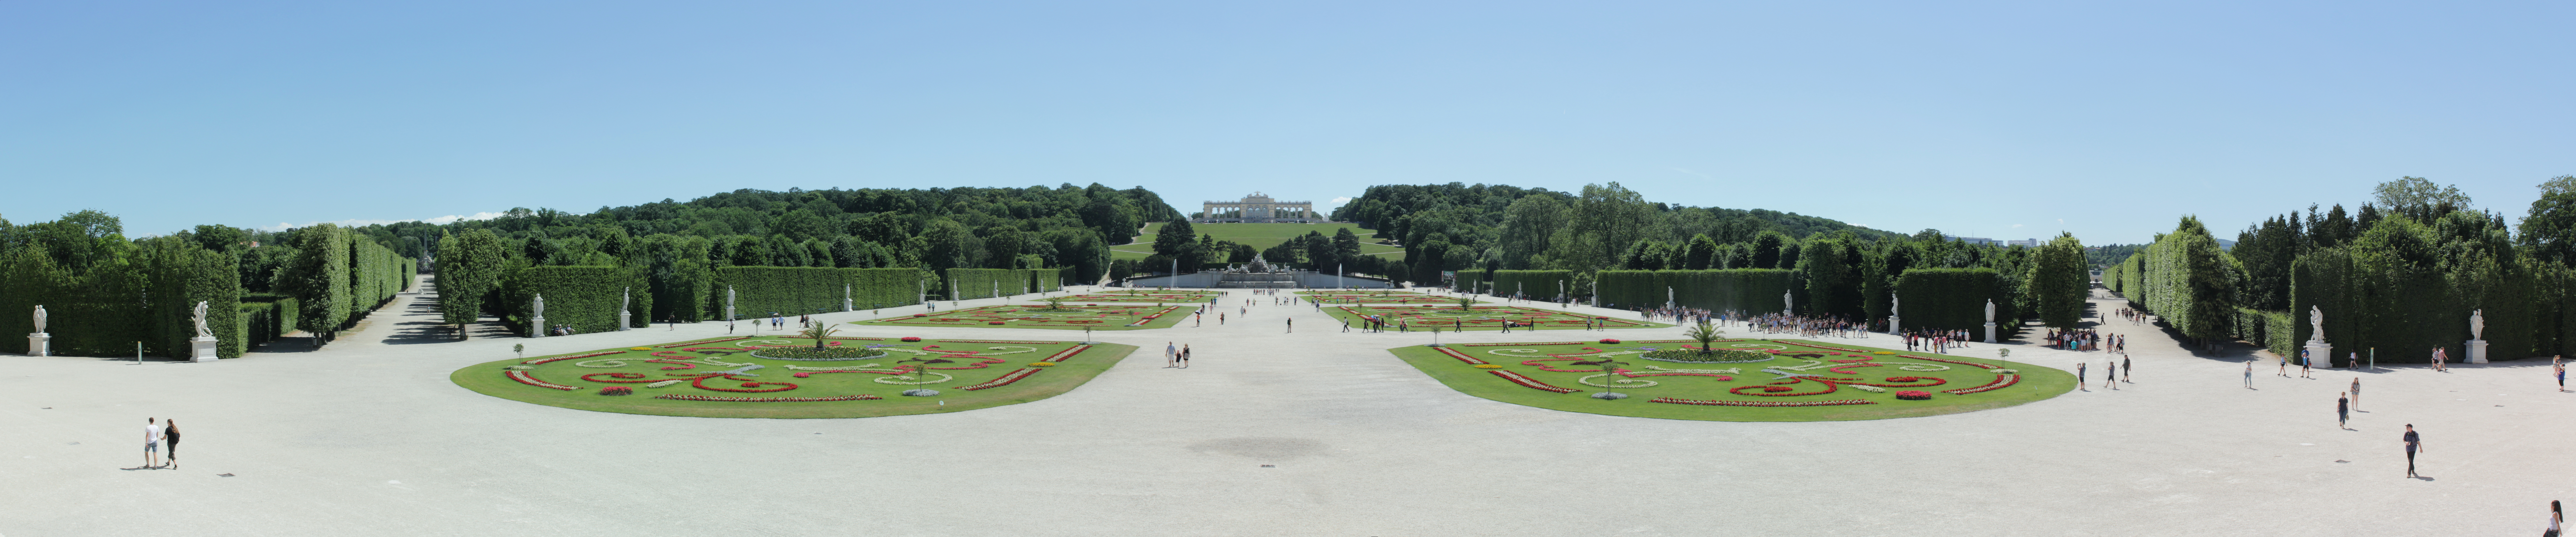 Great Parterre and Gloriette, Schönbrunn Palace, Vienna, panorama view